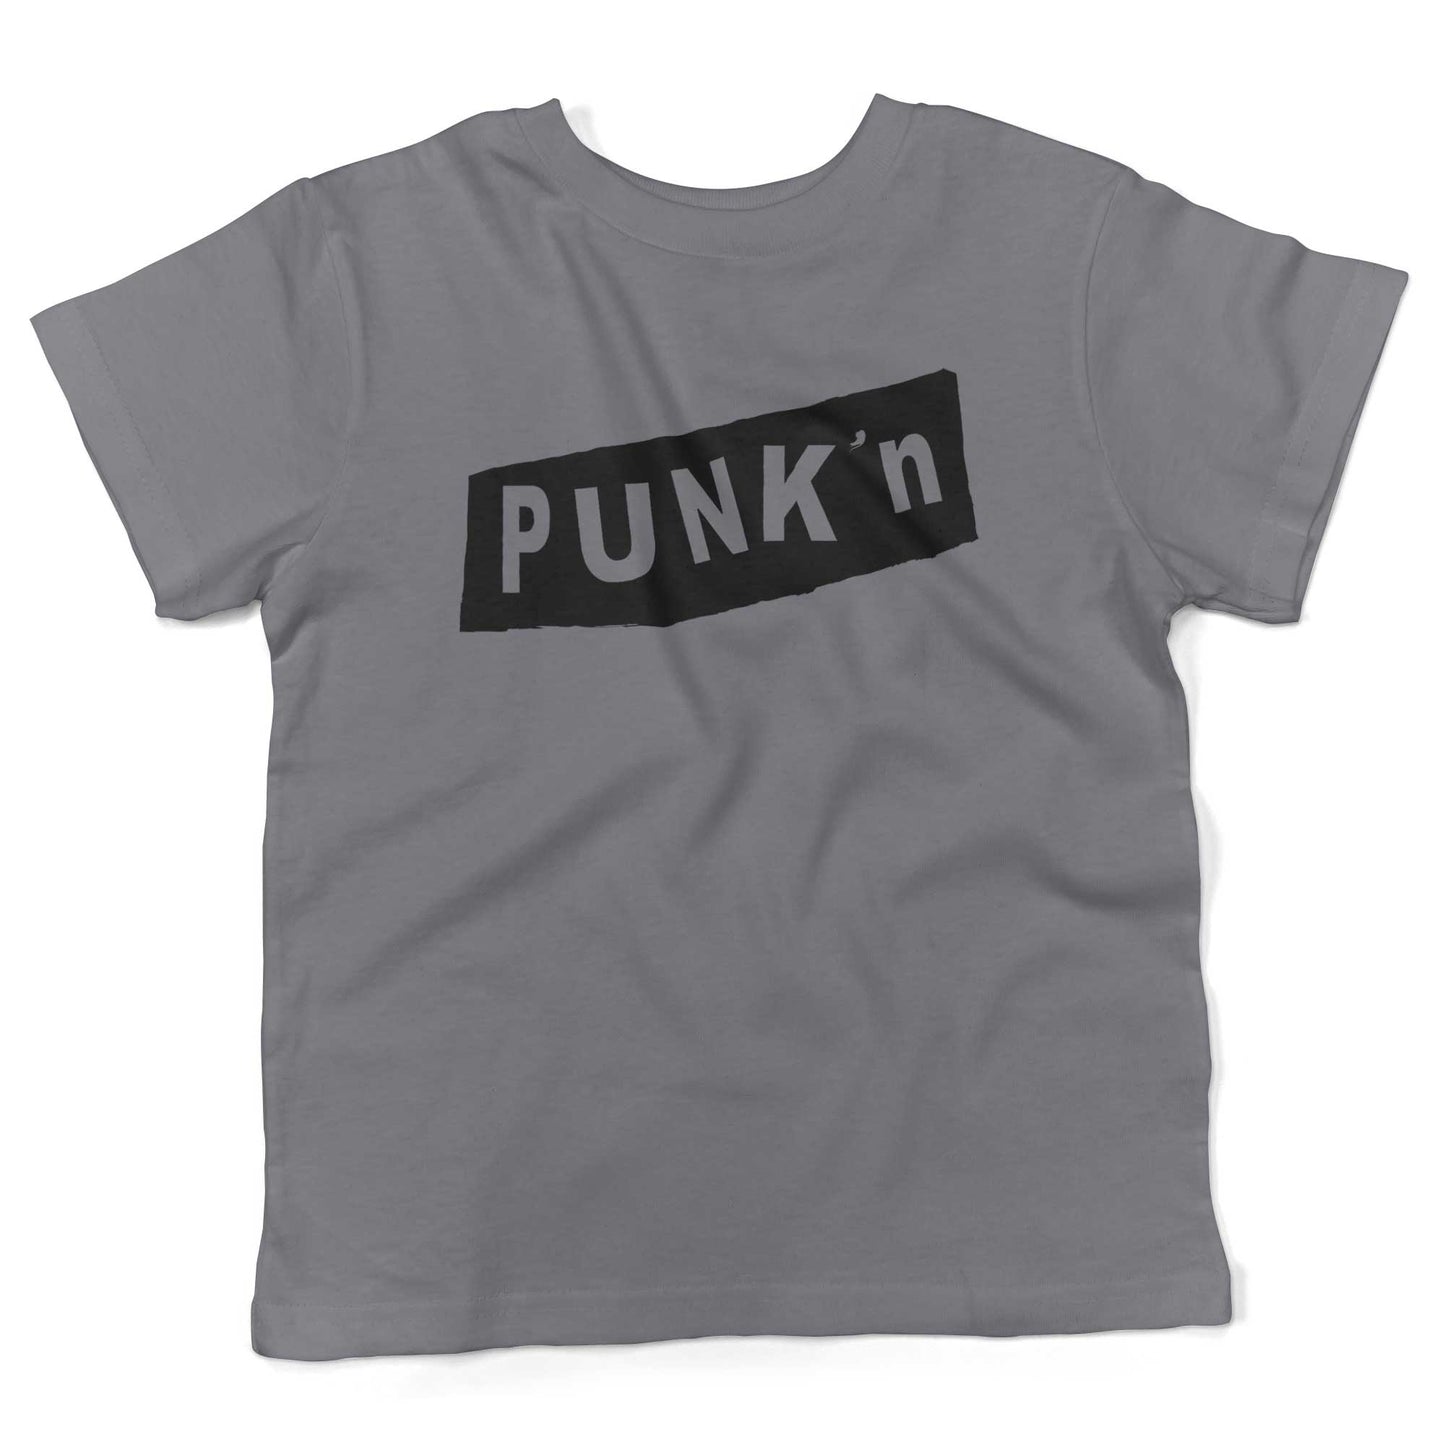 Pumpkin Punk'n Toddler Shirt-Slate-2T